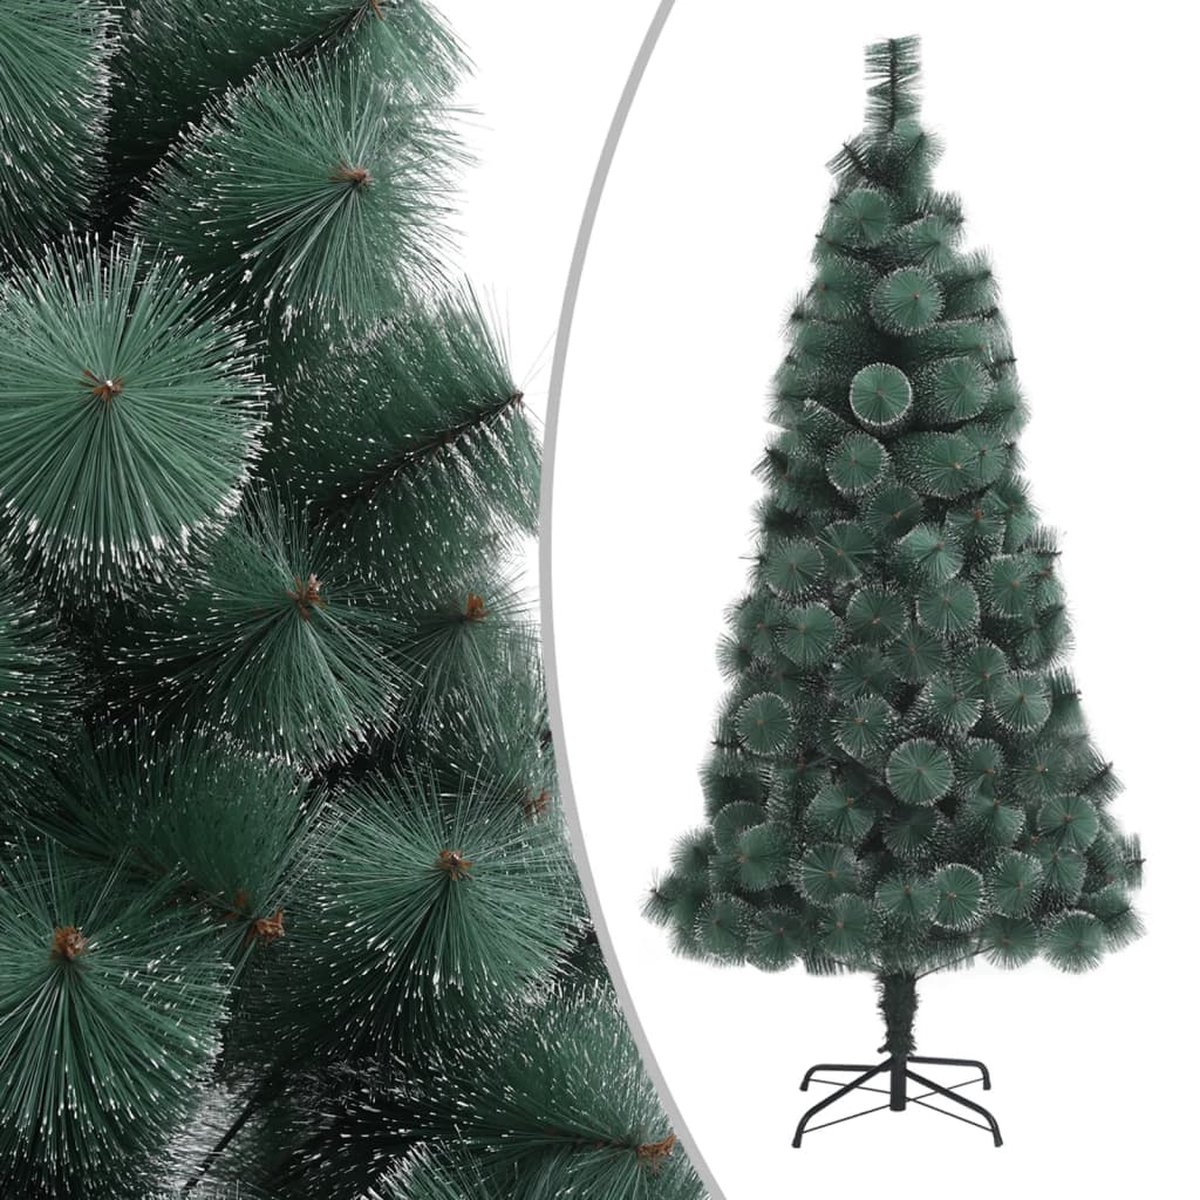 VidaLife Kunstkerstboom met standaard 210 cm PET groen